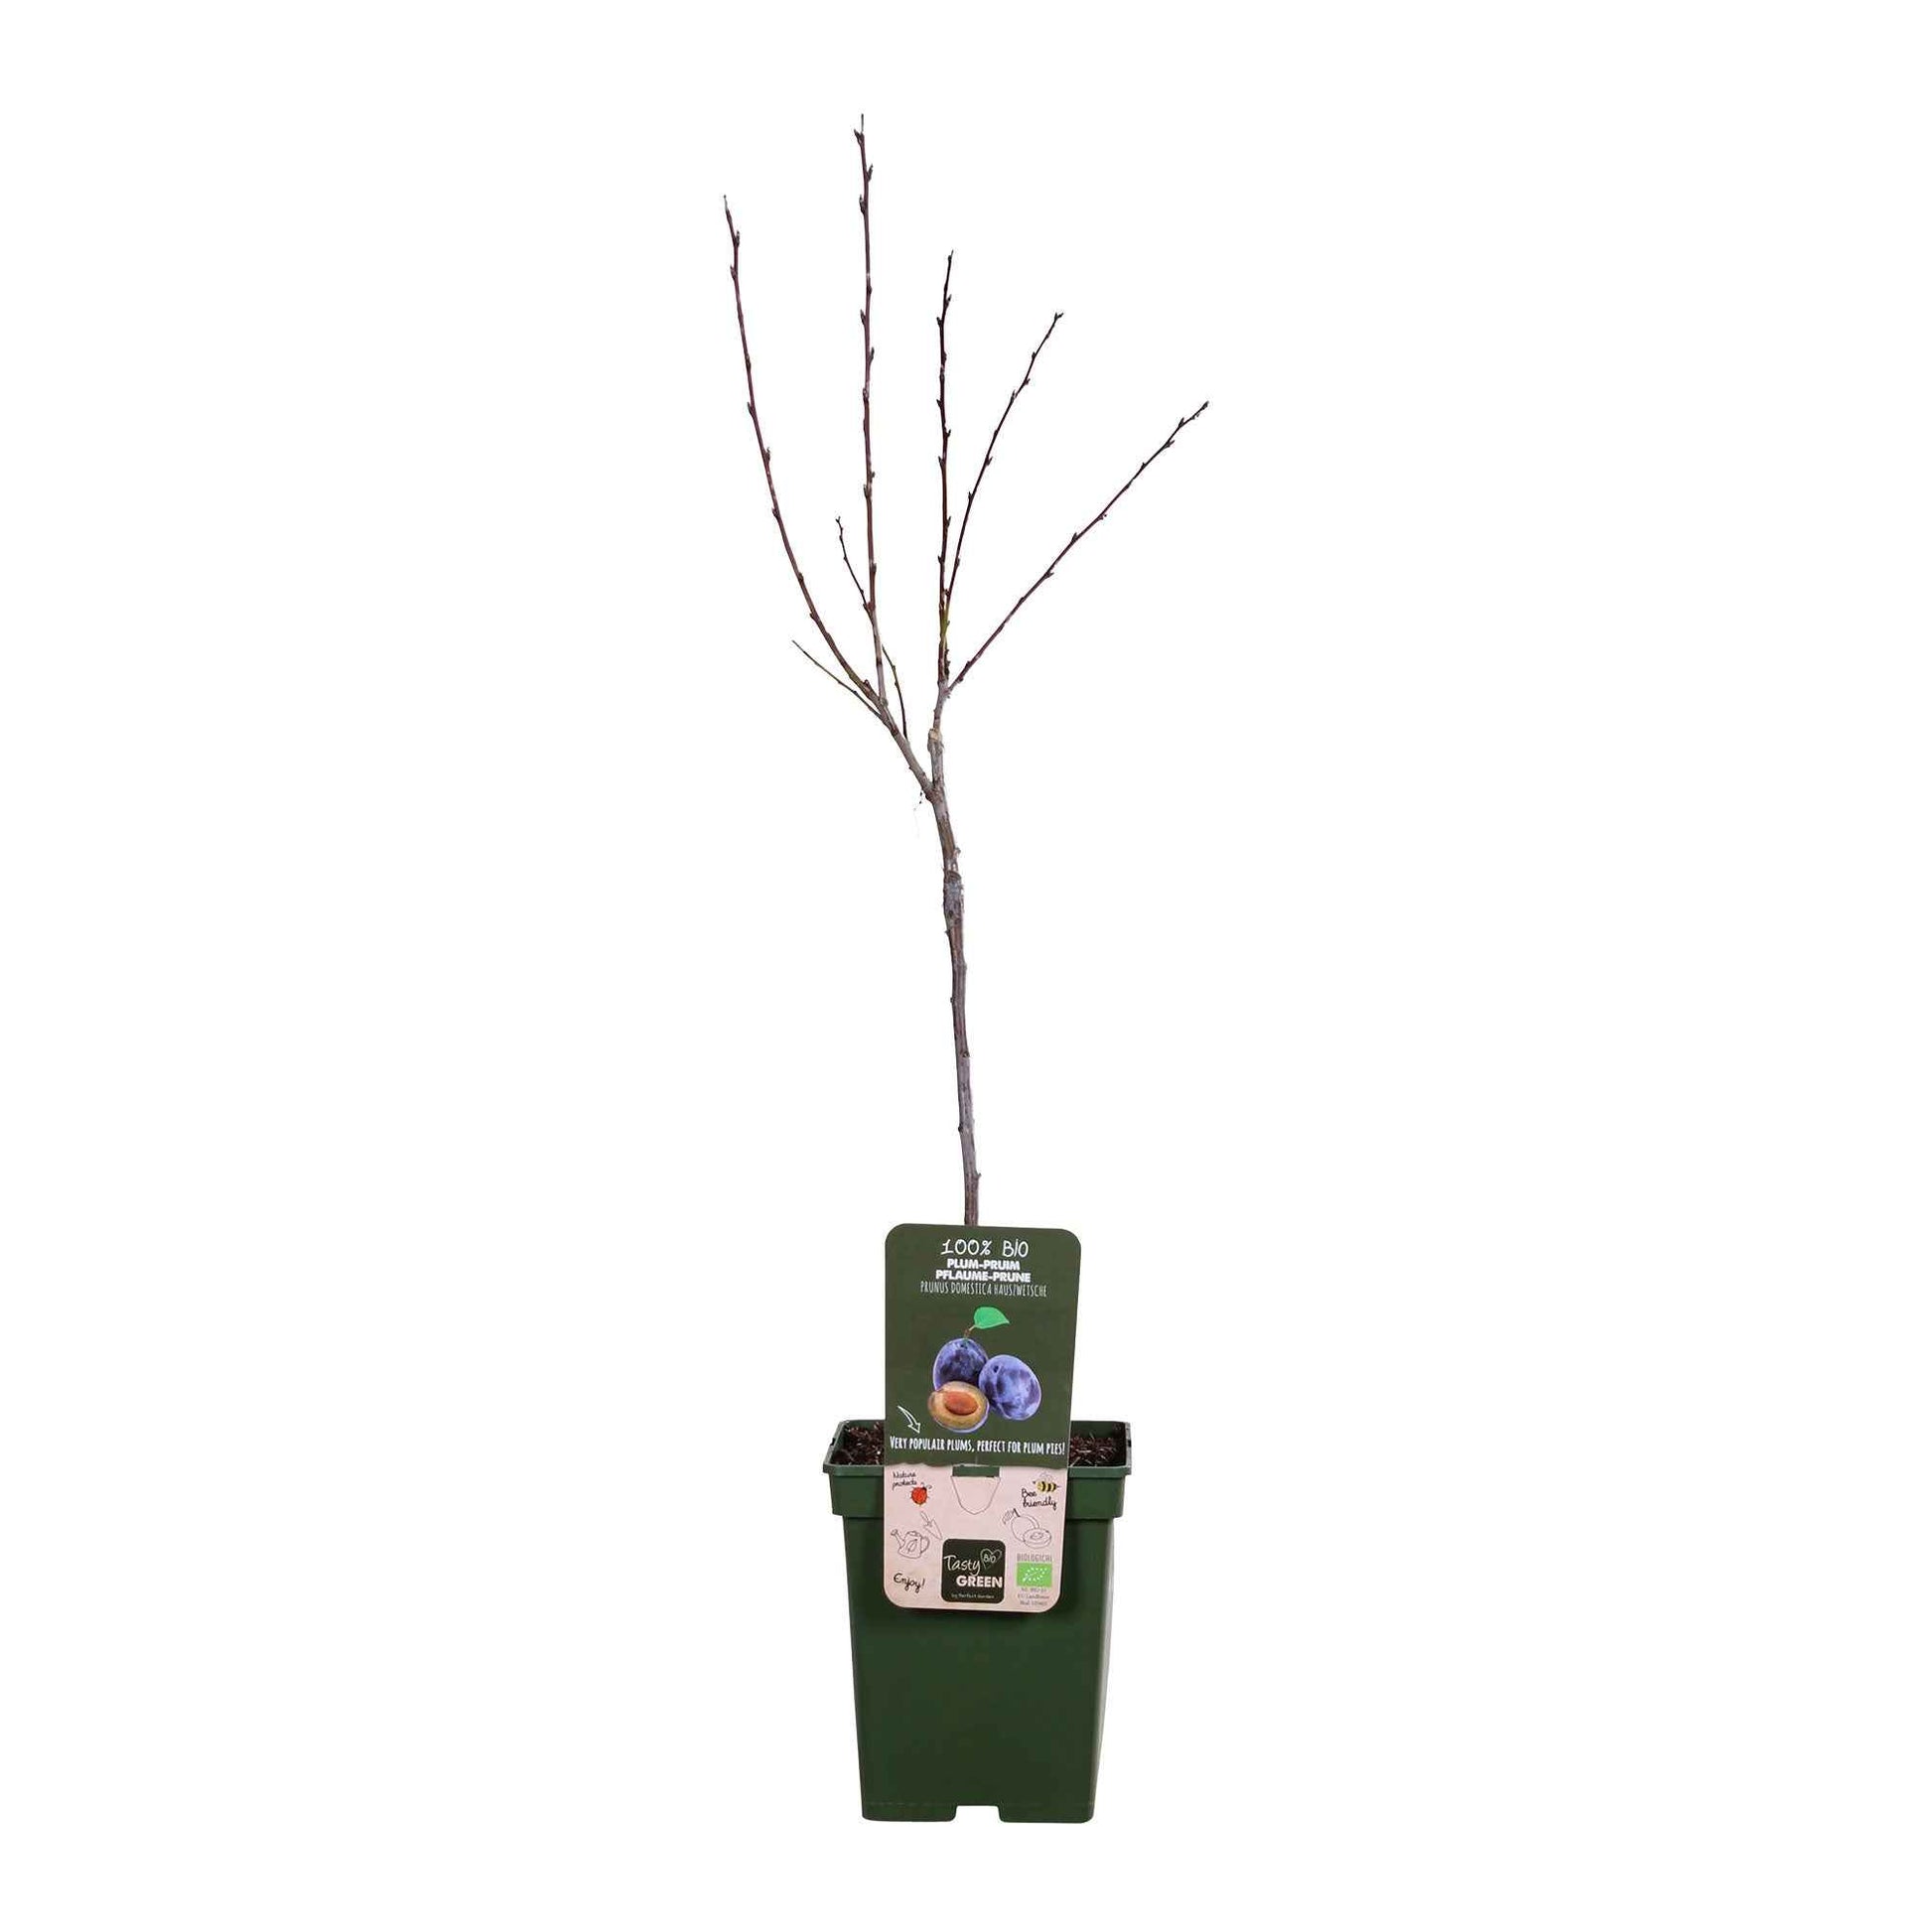 Pflaumenbaum Prunus domestica 'Hauszwetsche' Weiß-Blau-Grün - Bio - Winterhart - Bäume und Hecken